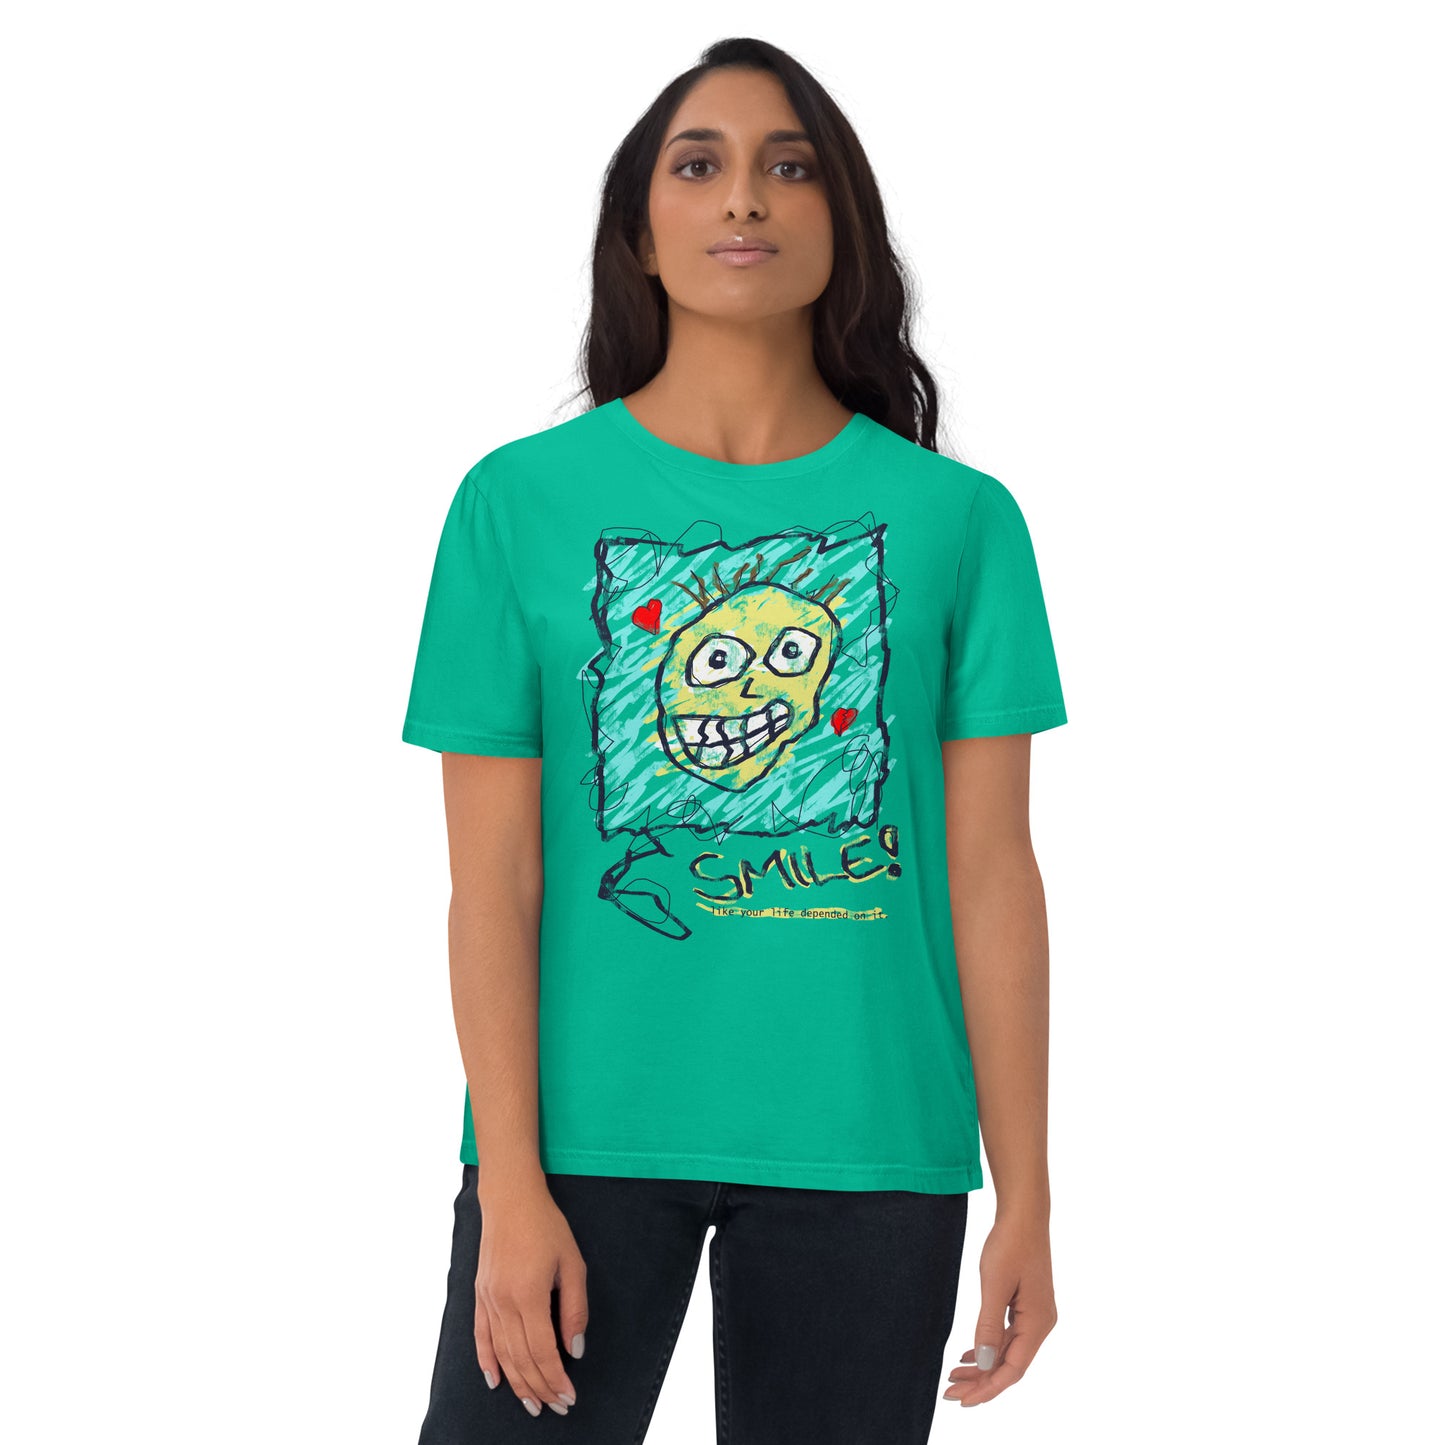 Eco-Friendly Unisex Organic Cotton T-Shirt - Neduz Doodle Collection - Smiley Face Print